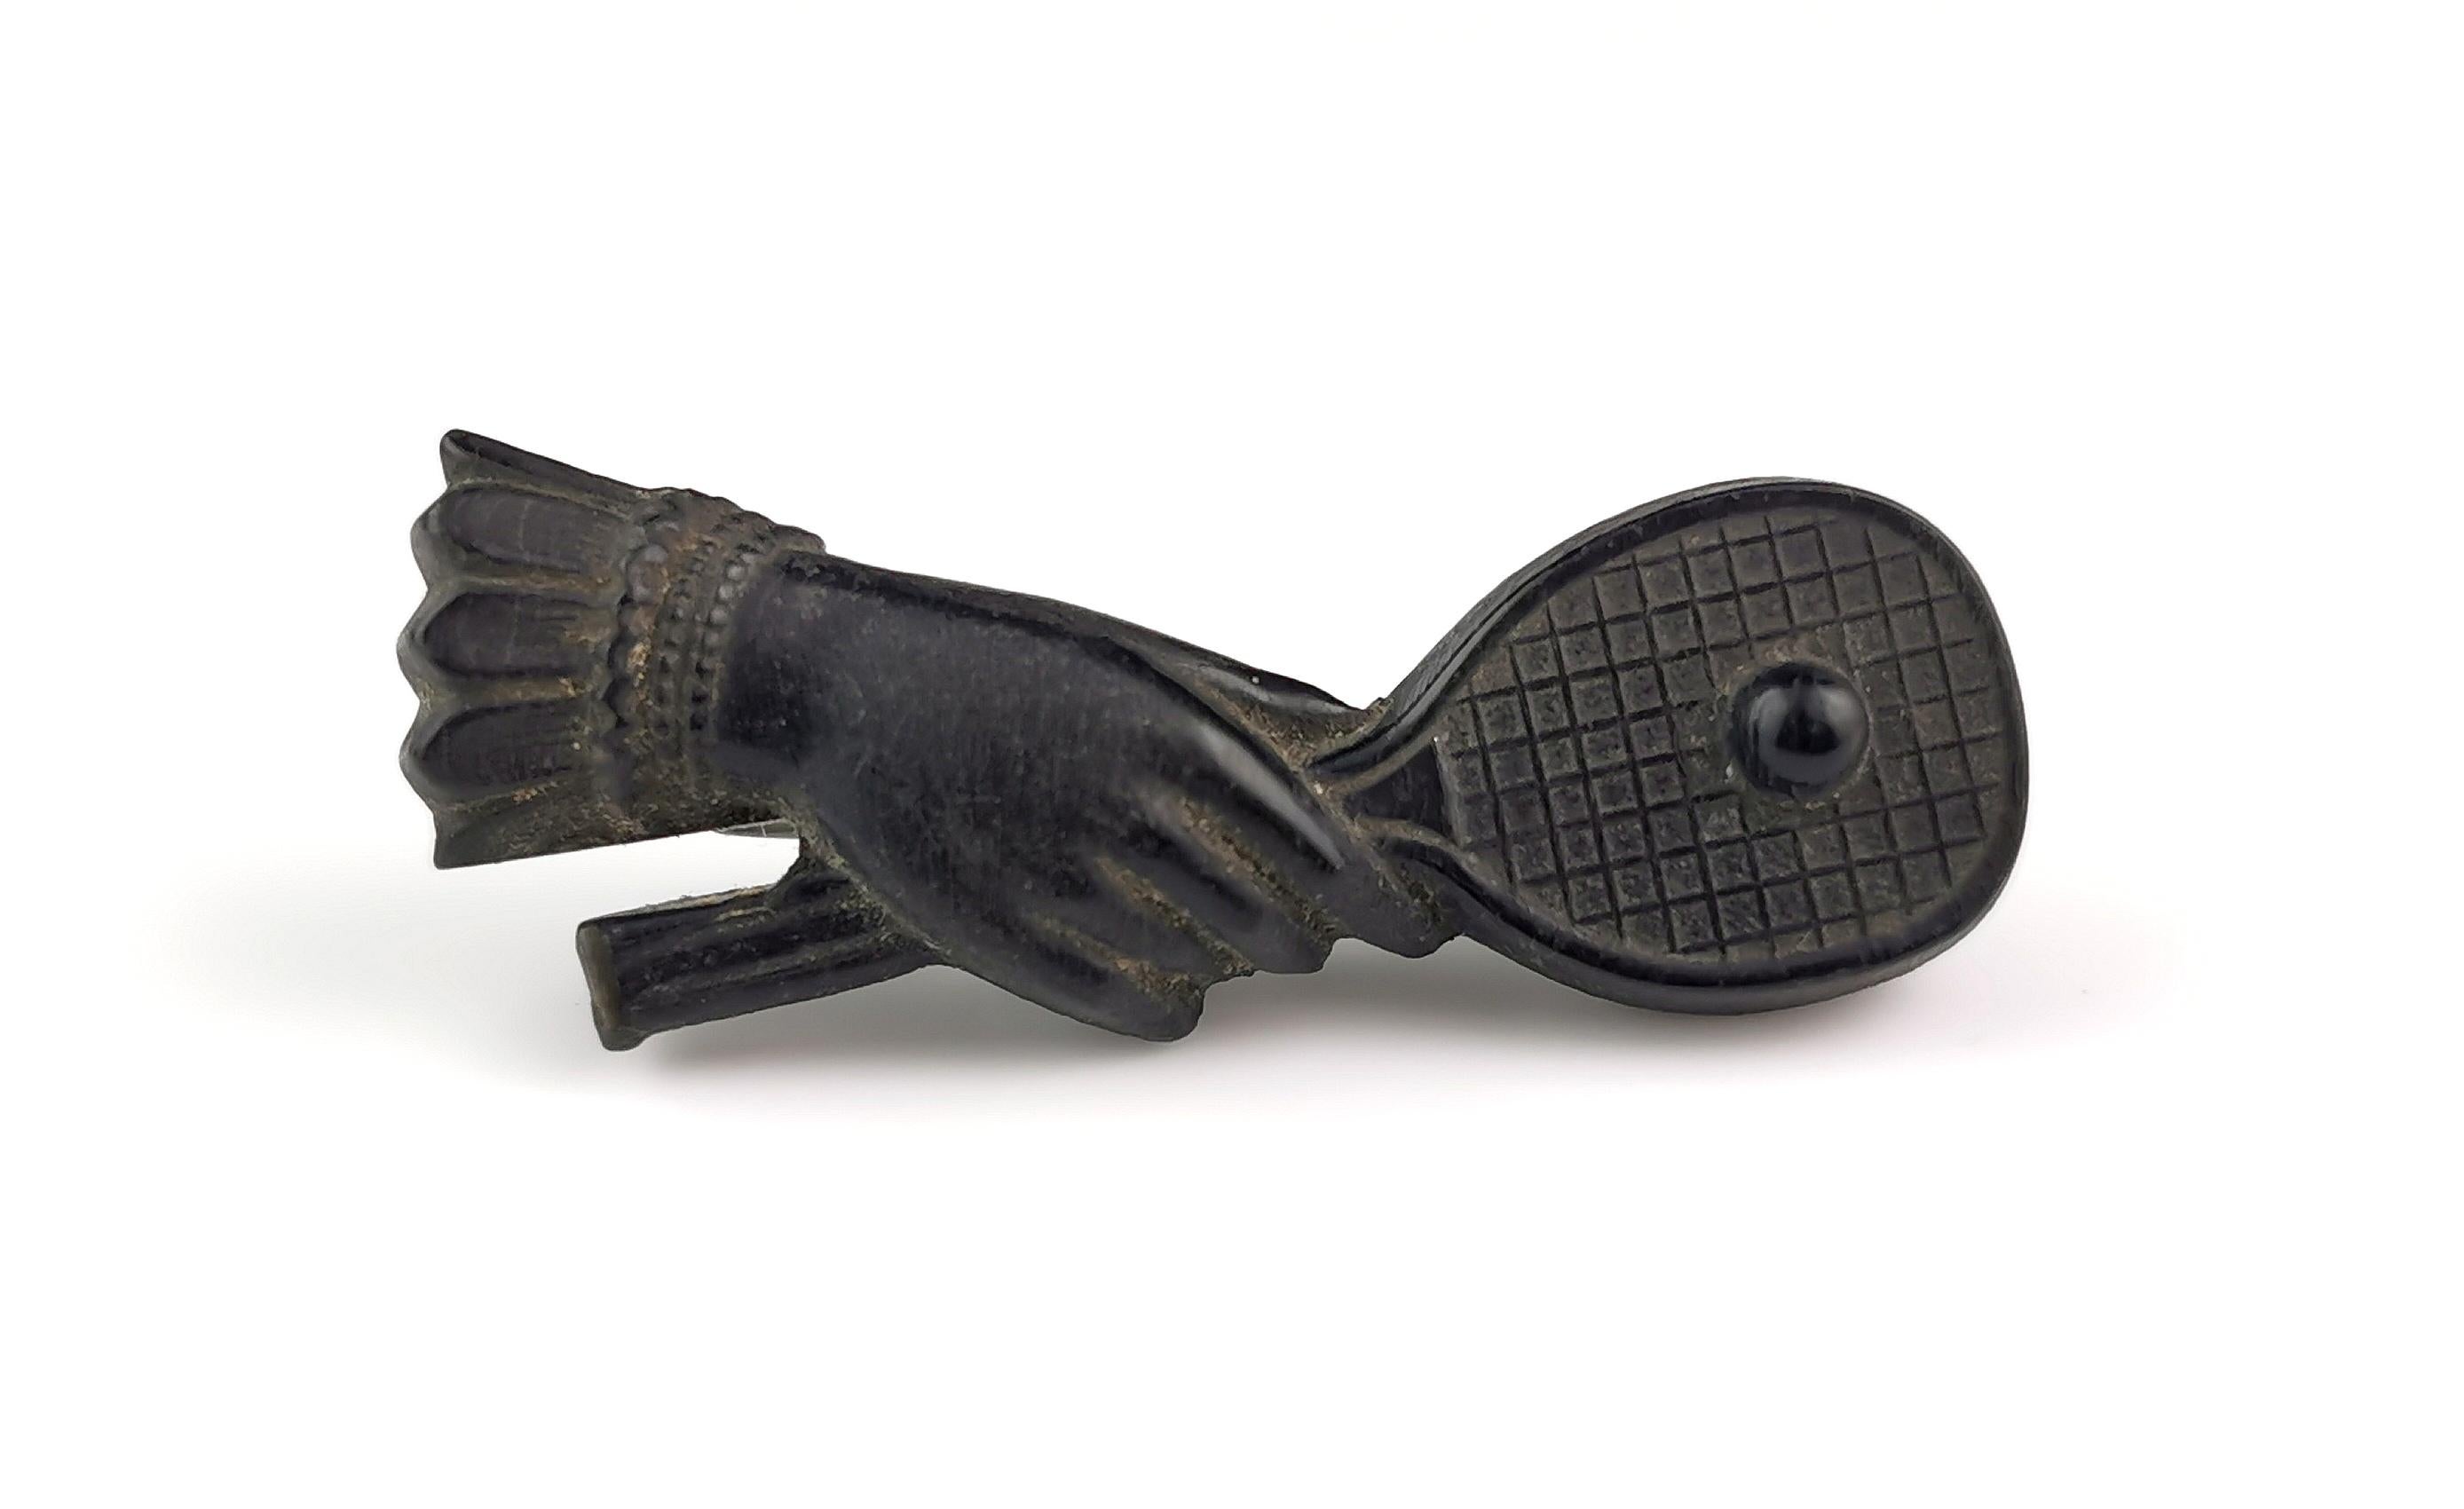 Eine interessante und gut detaillierte antike viktorianische Tennisbrosche.

Es zeigt eine gefesselte Hand, die einen Tennisschläger mit einem Ball hält.

Die Brosche ist aus Mooreiche gefertigt und zusätzlich schwarz lackiert.

Es ist eine alte